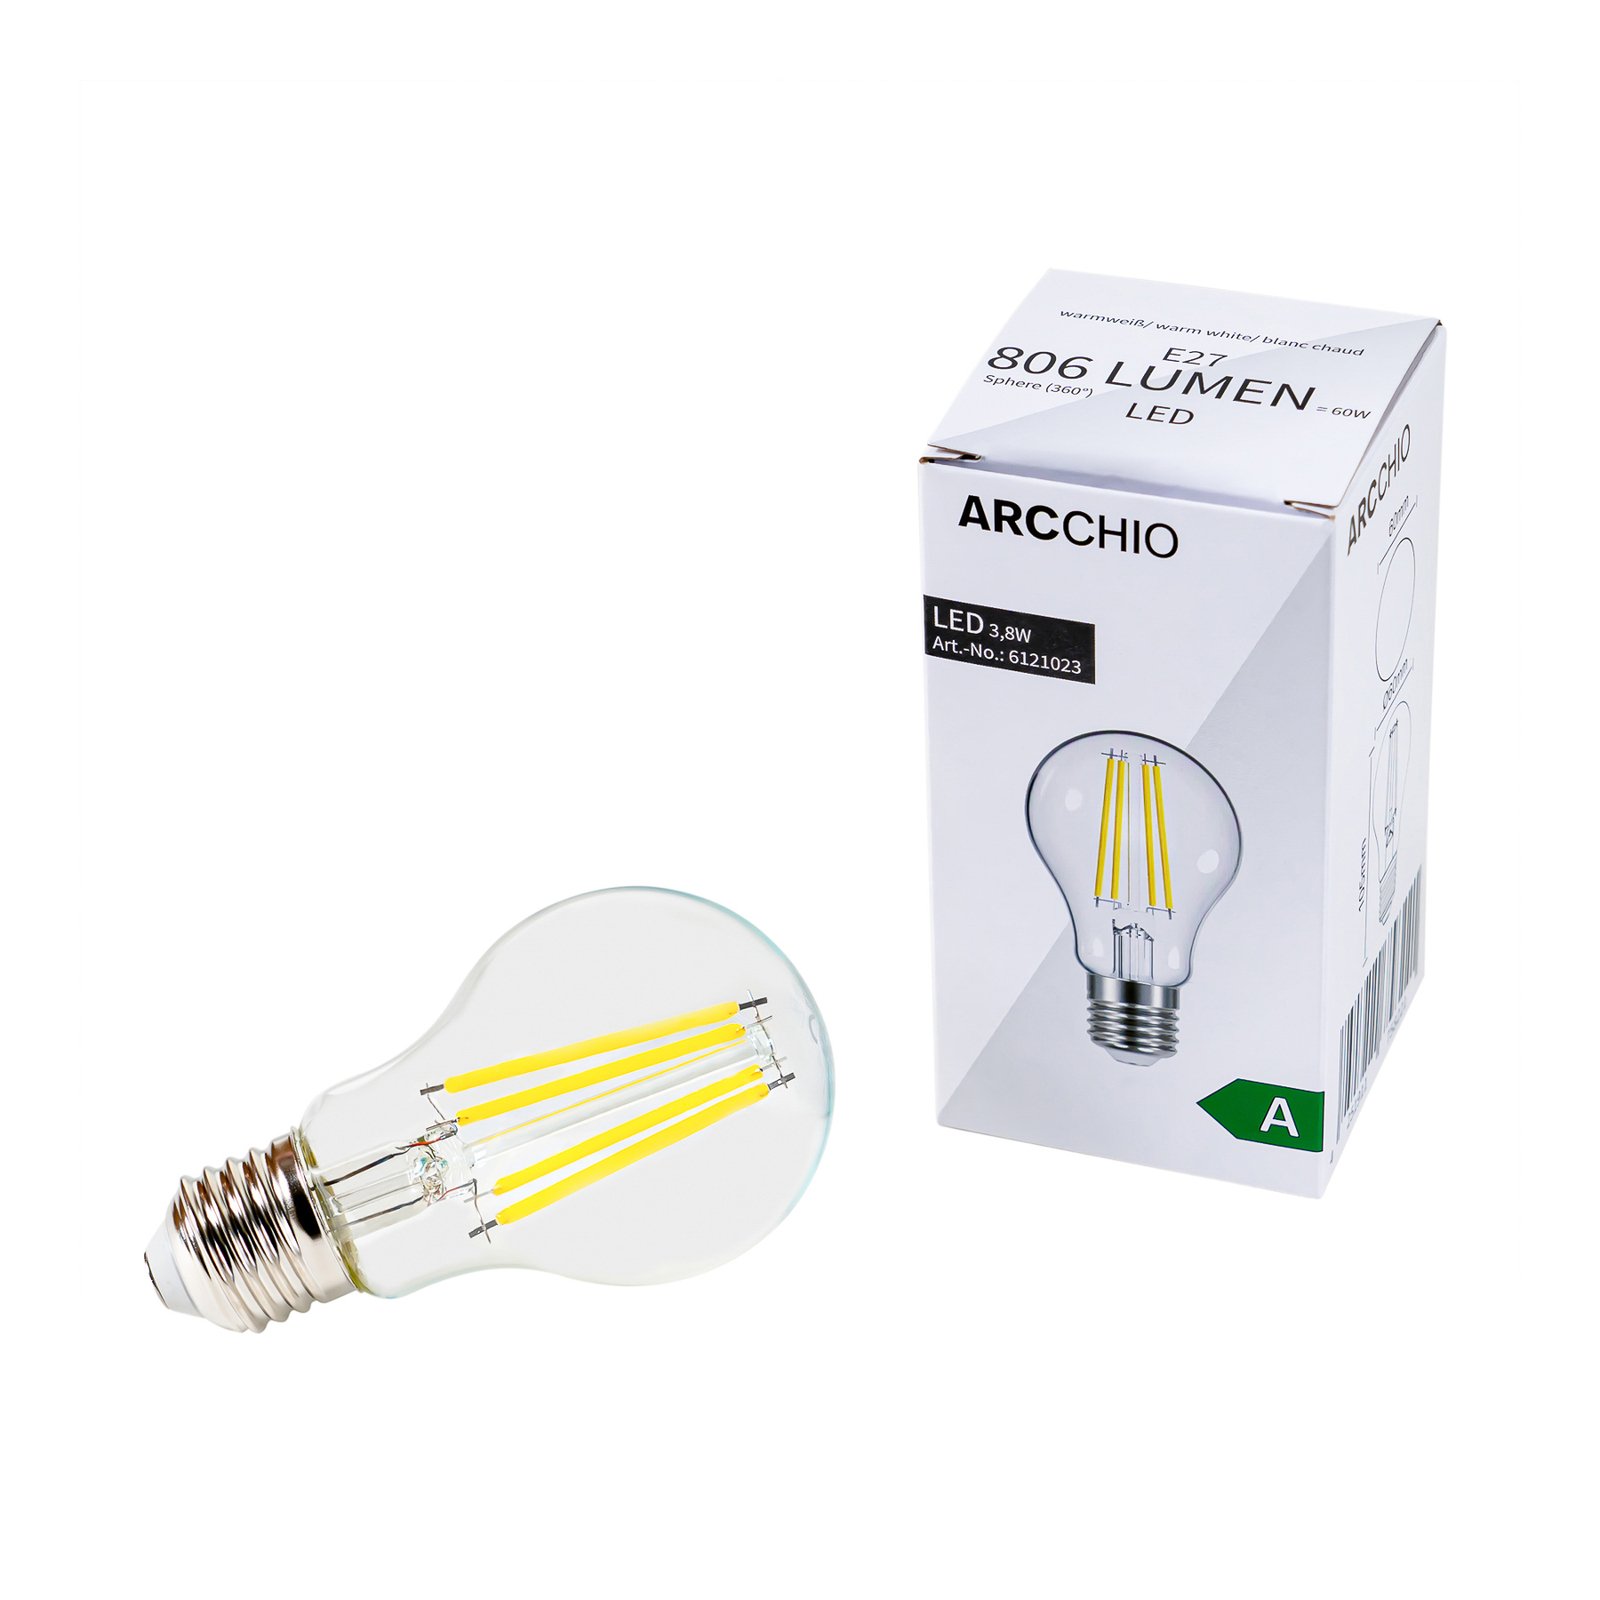 LED filament lamp E27 5W 1060 Lumen 10 per set